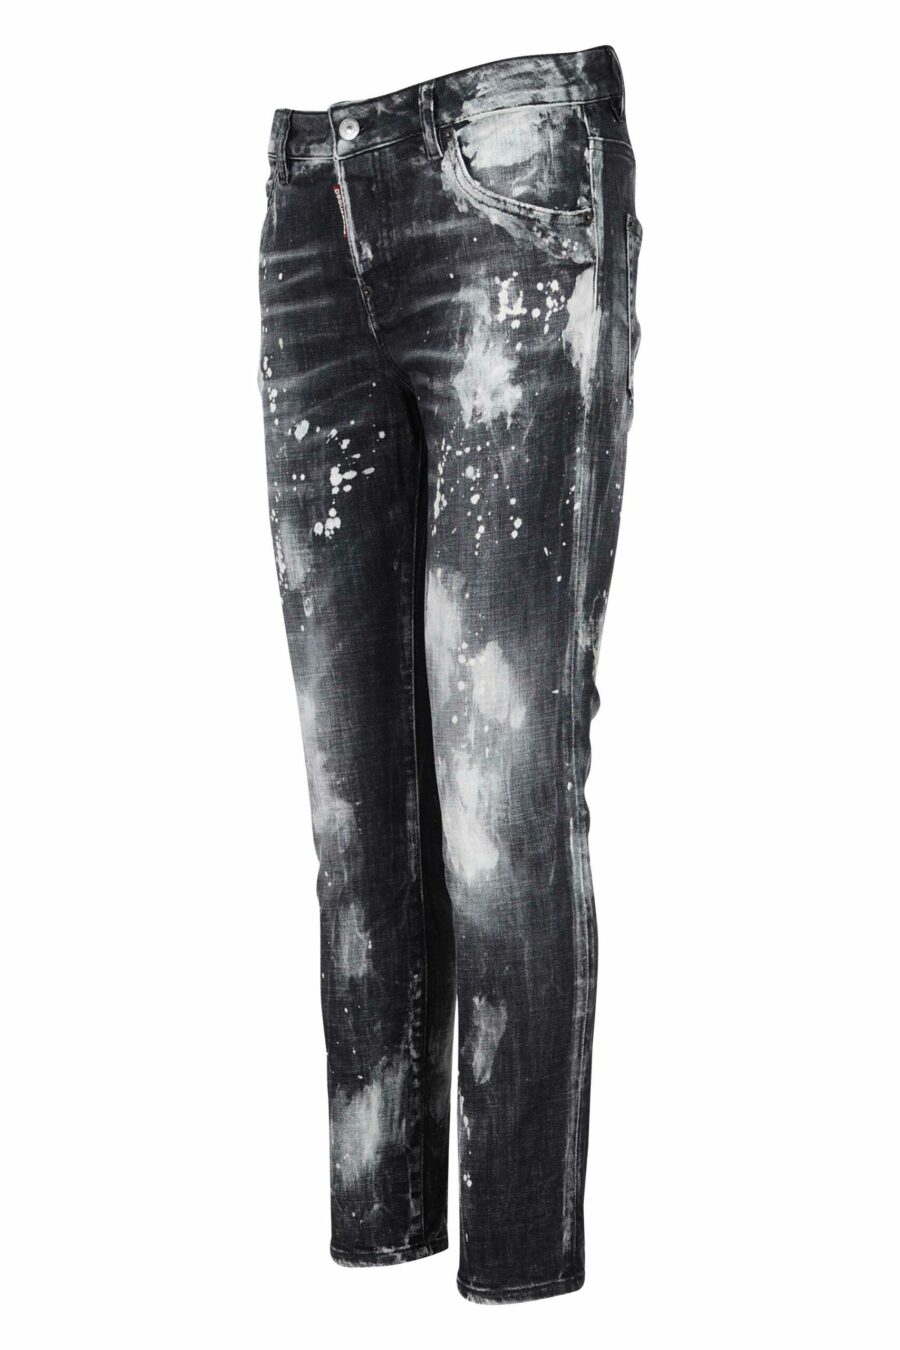 Pantalon en jean "cool girl jean" noir usé par endroits - 8054148118112 1 scaled